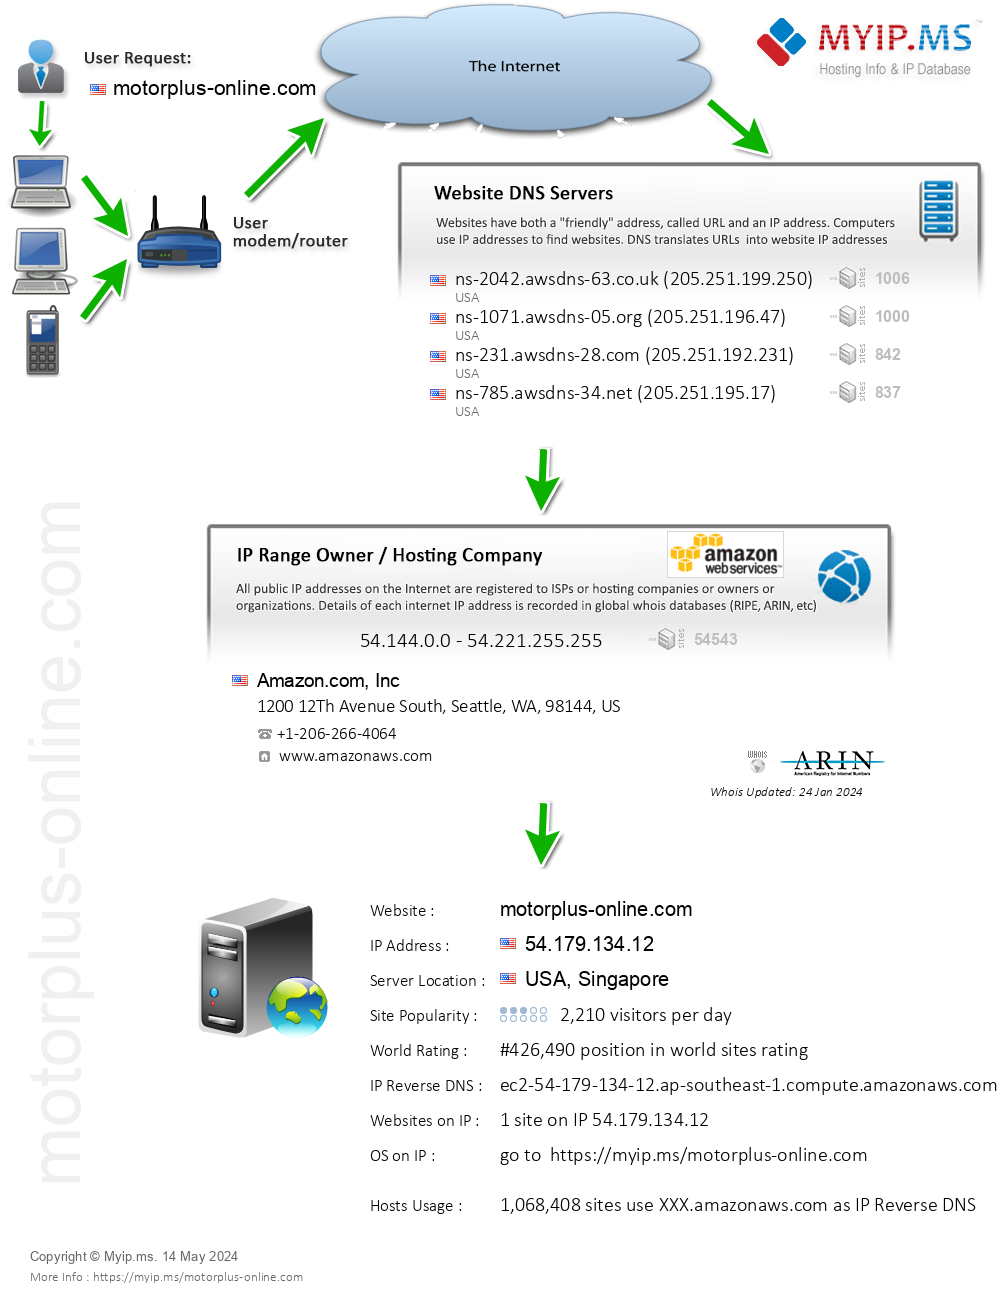 Motorplus-online.com - Website Hosting Visual IP Diagram